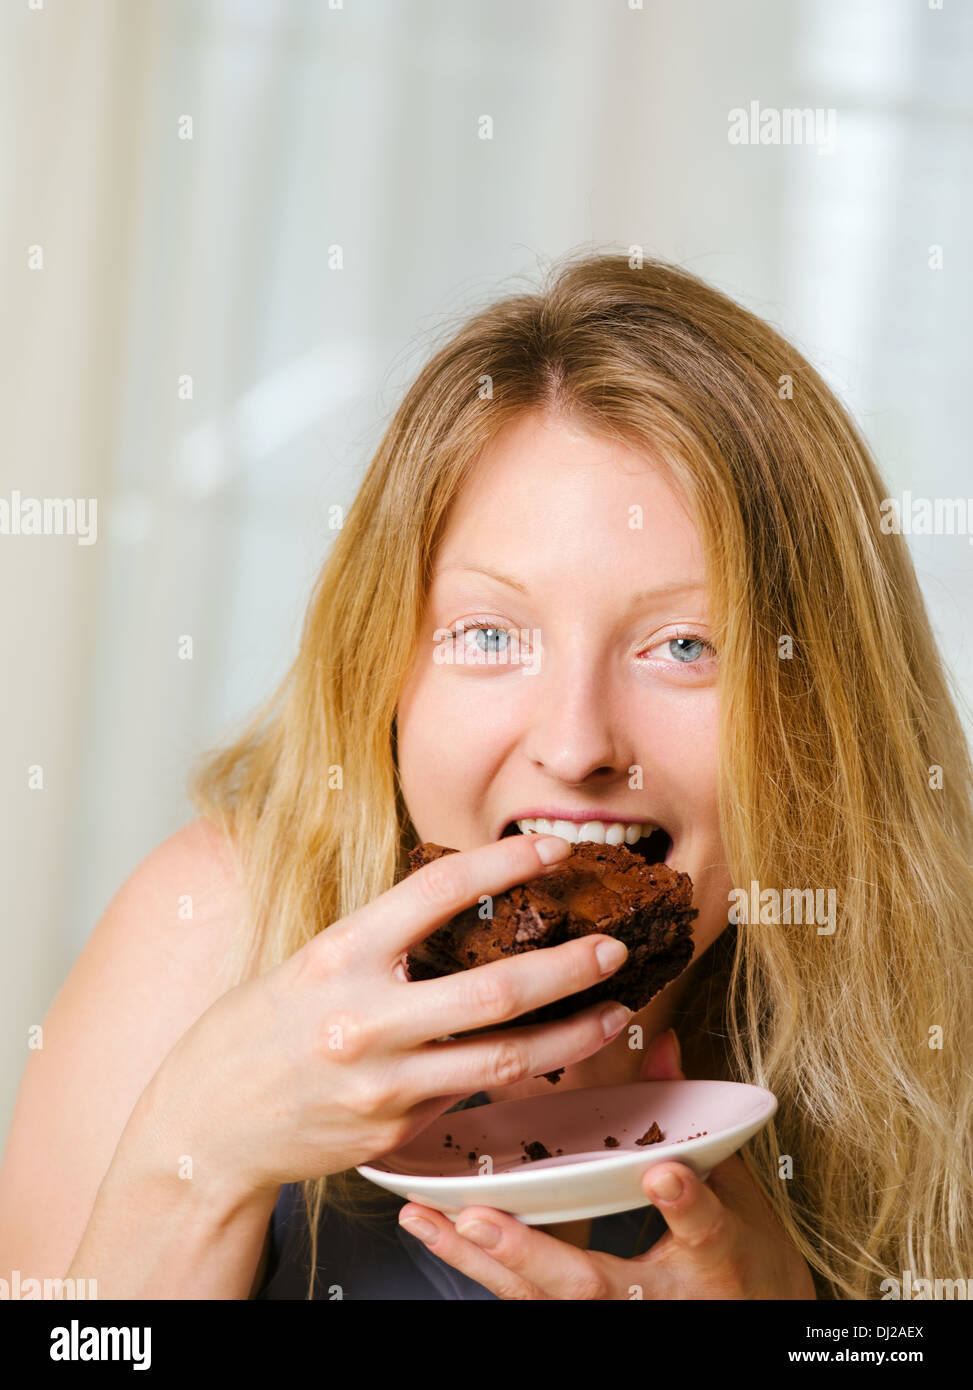 Foto von einer schönen blonden Frau in ihren frühen Dreißigern mit Log blonden Haaren ein großes Stück Brownie oder Kuchen essen. Stockfoto